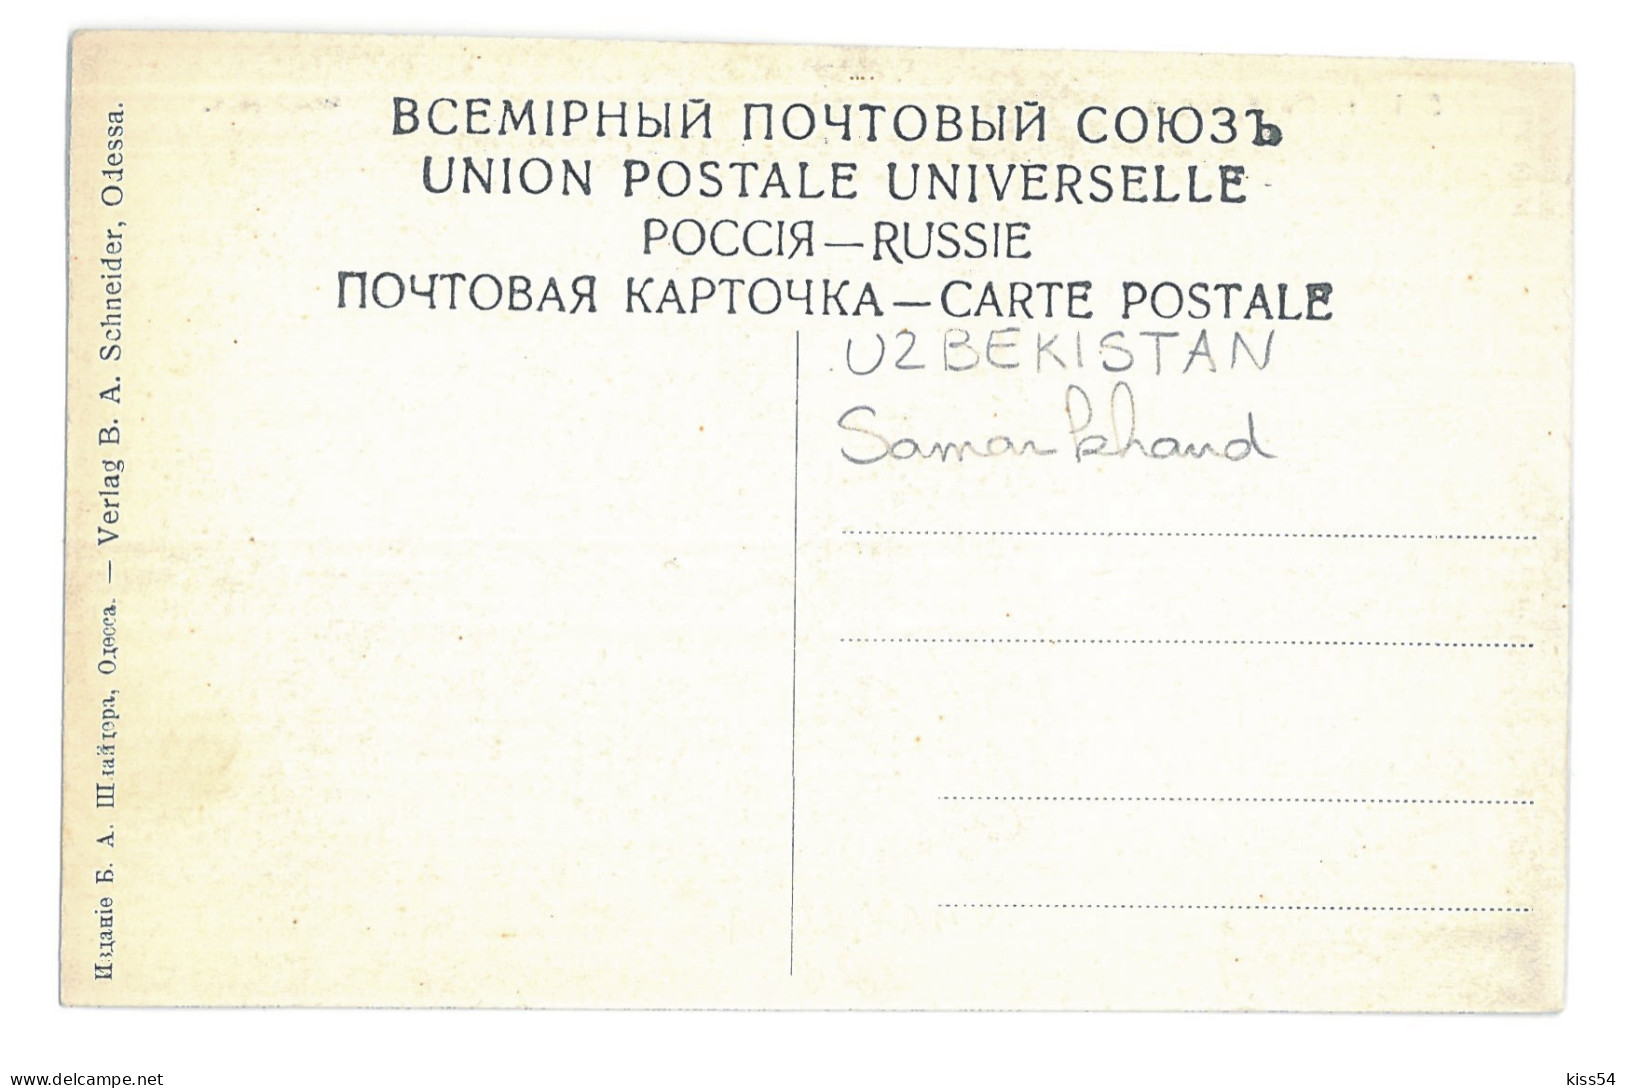 U 24 - 15538 SAMARKAND, Panorama, Uzbekistan - Old Postcard - Unused - Usbekistan